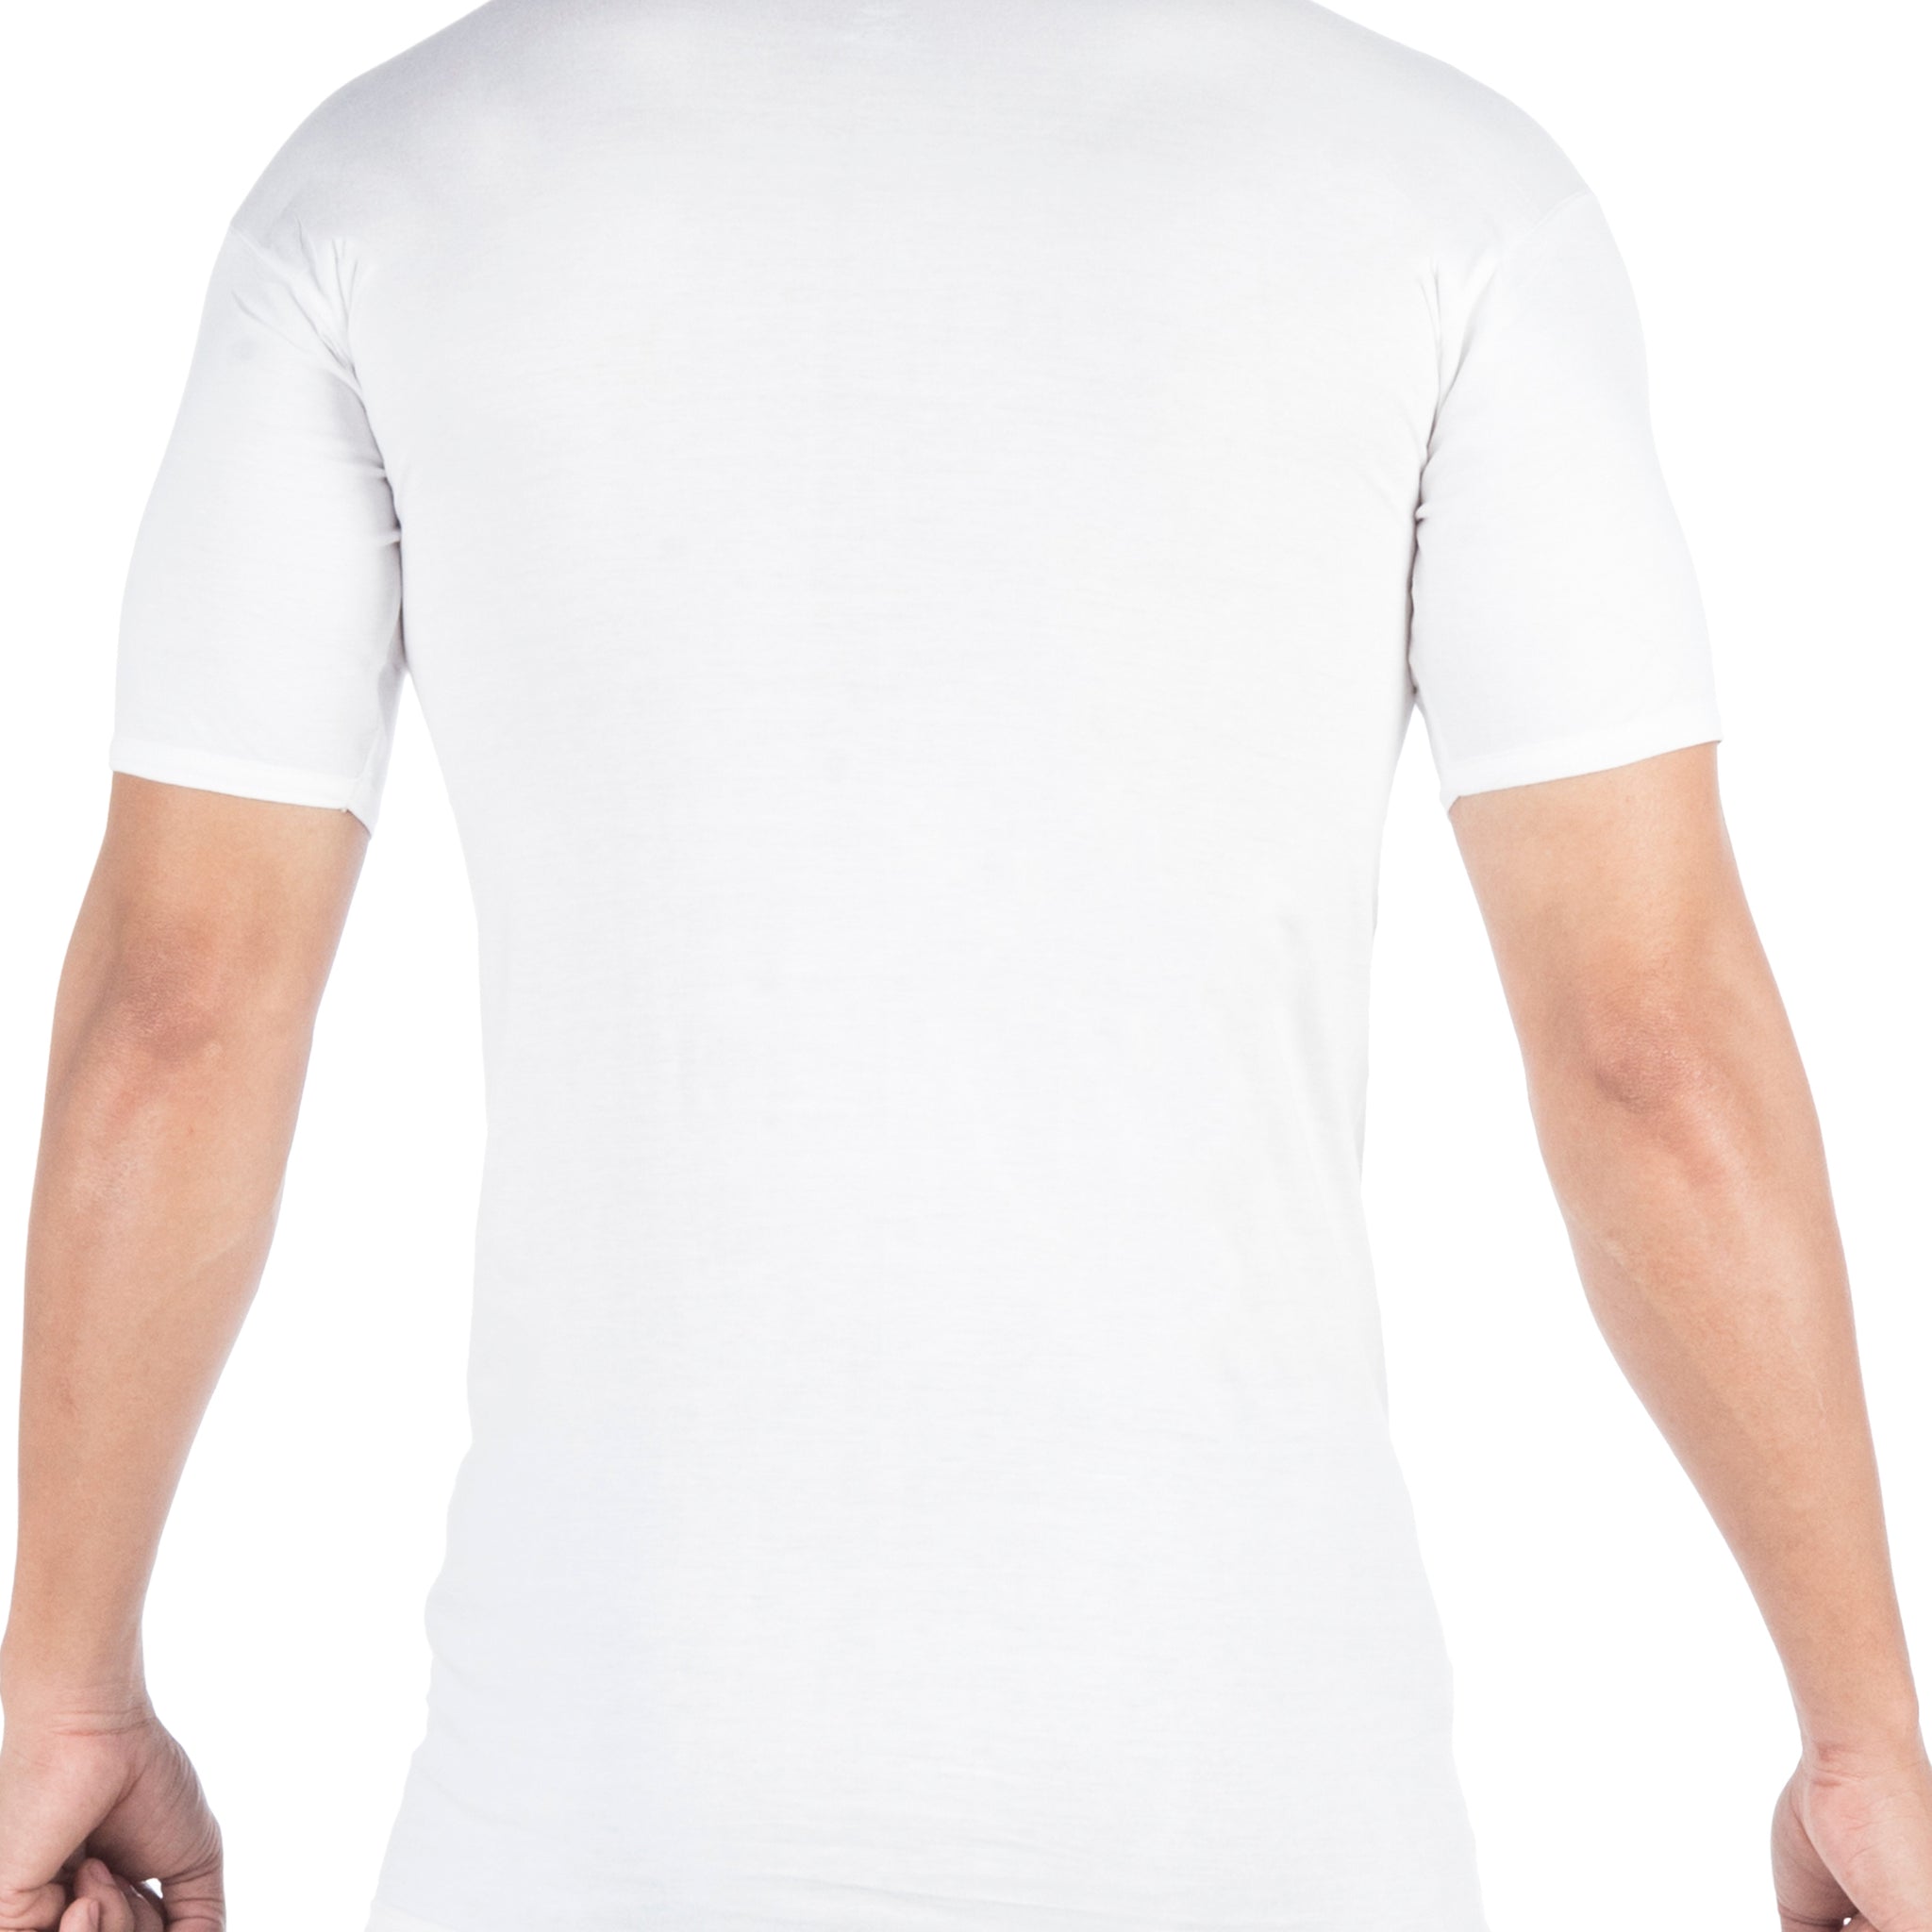 VIP Bonus Classic Round Neck Men's Cotton Vest with Sleeves - White